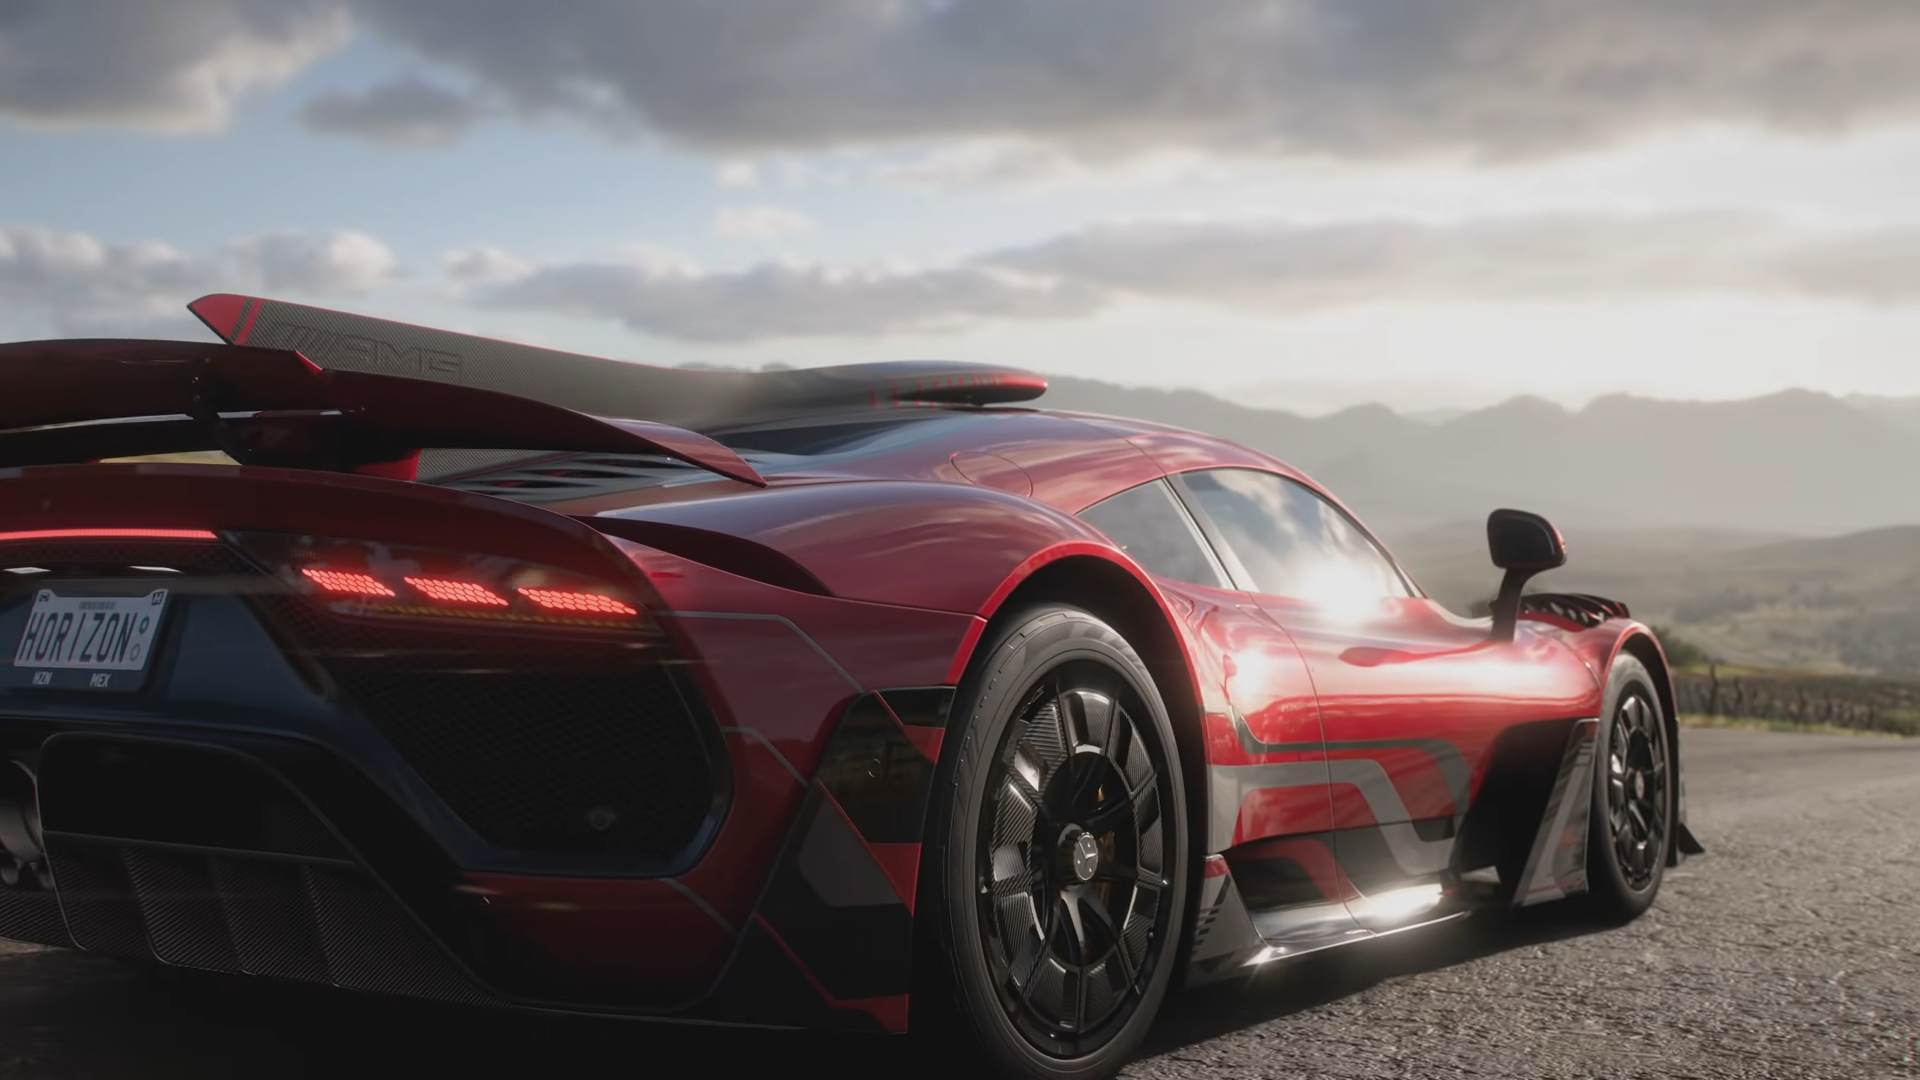 Bilder zu Forza Horizon 5 wirft seine Schatten voraus: keine neuen Inhalte mehr für Forza Horizon 4